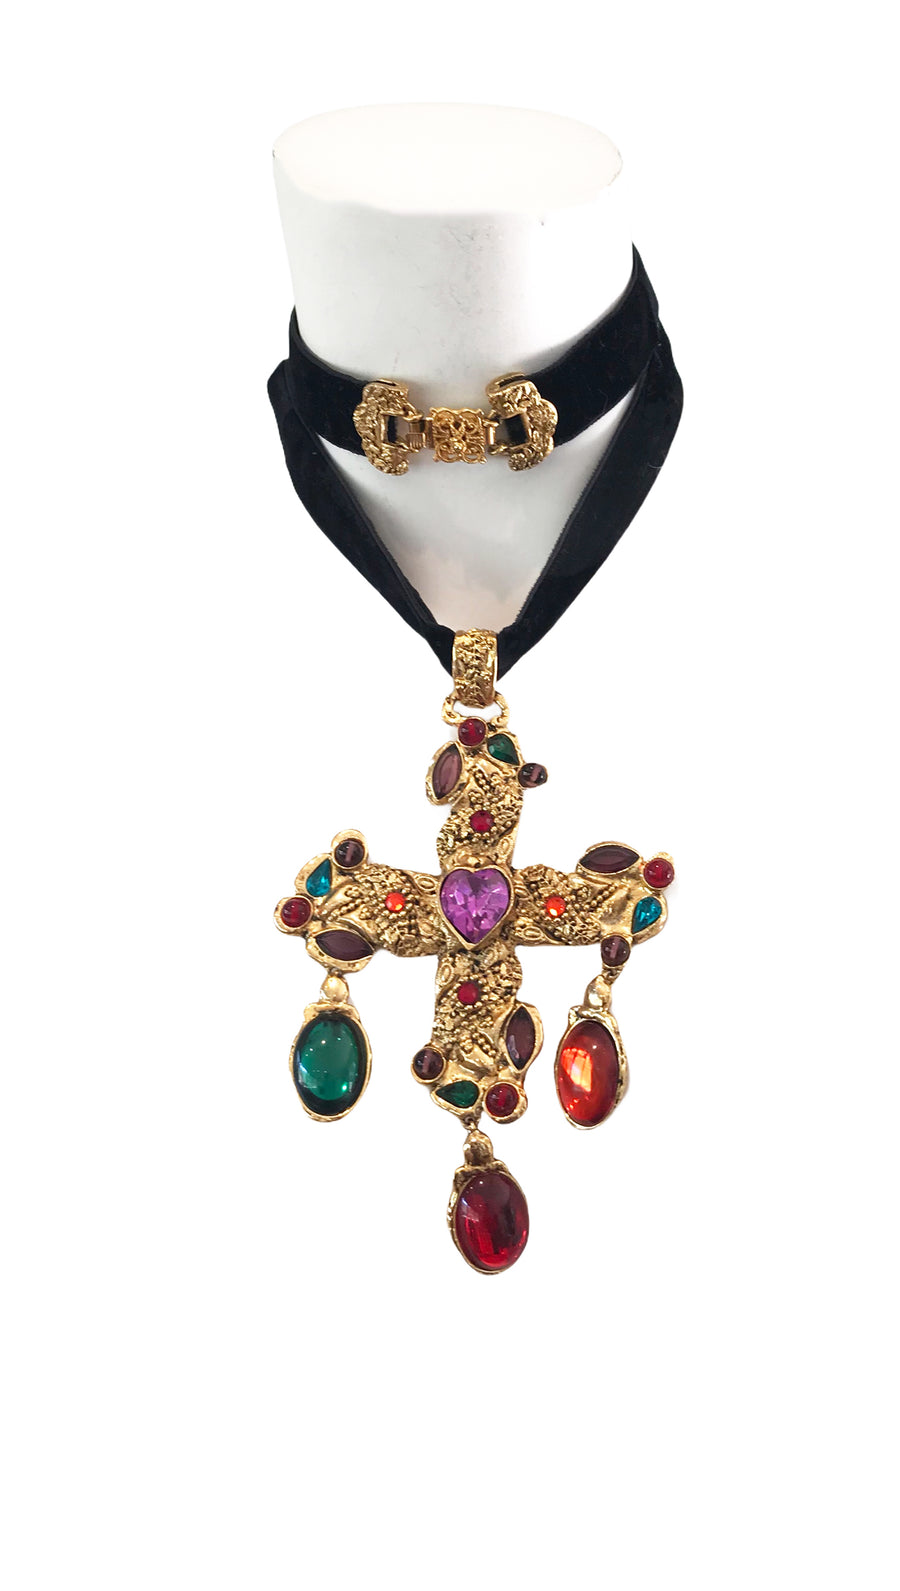 CHRISTIAN LACROIX massive cross necklace